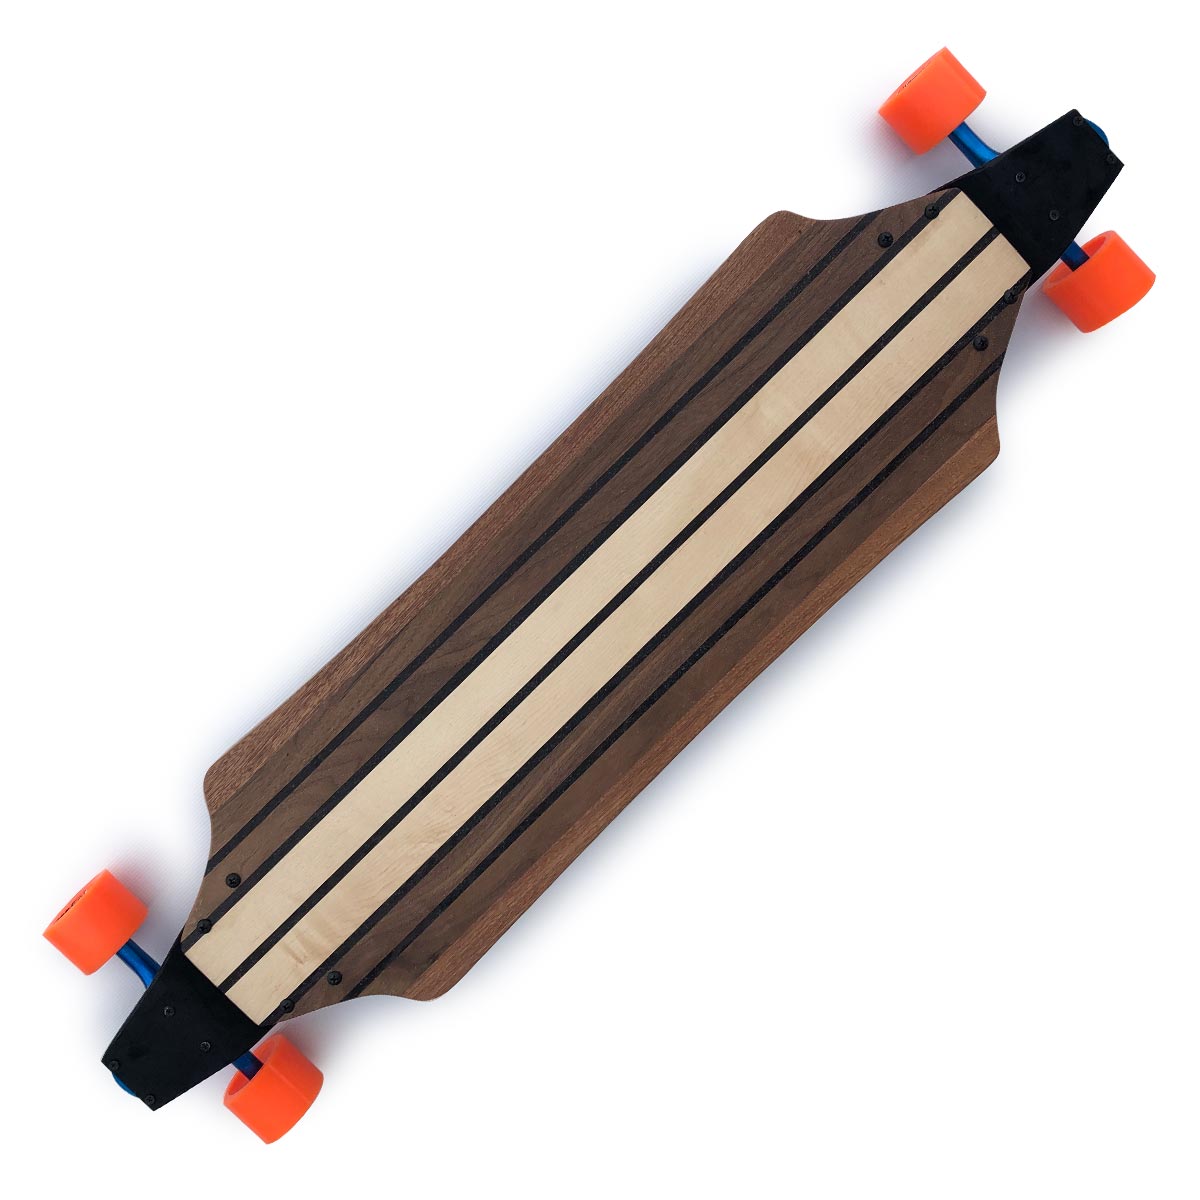 New Titan FSS handcrafted Skateboard 38 in